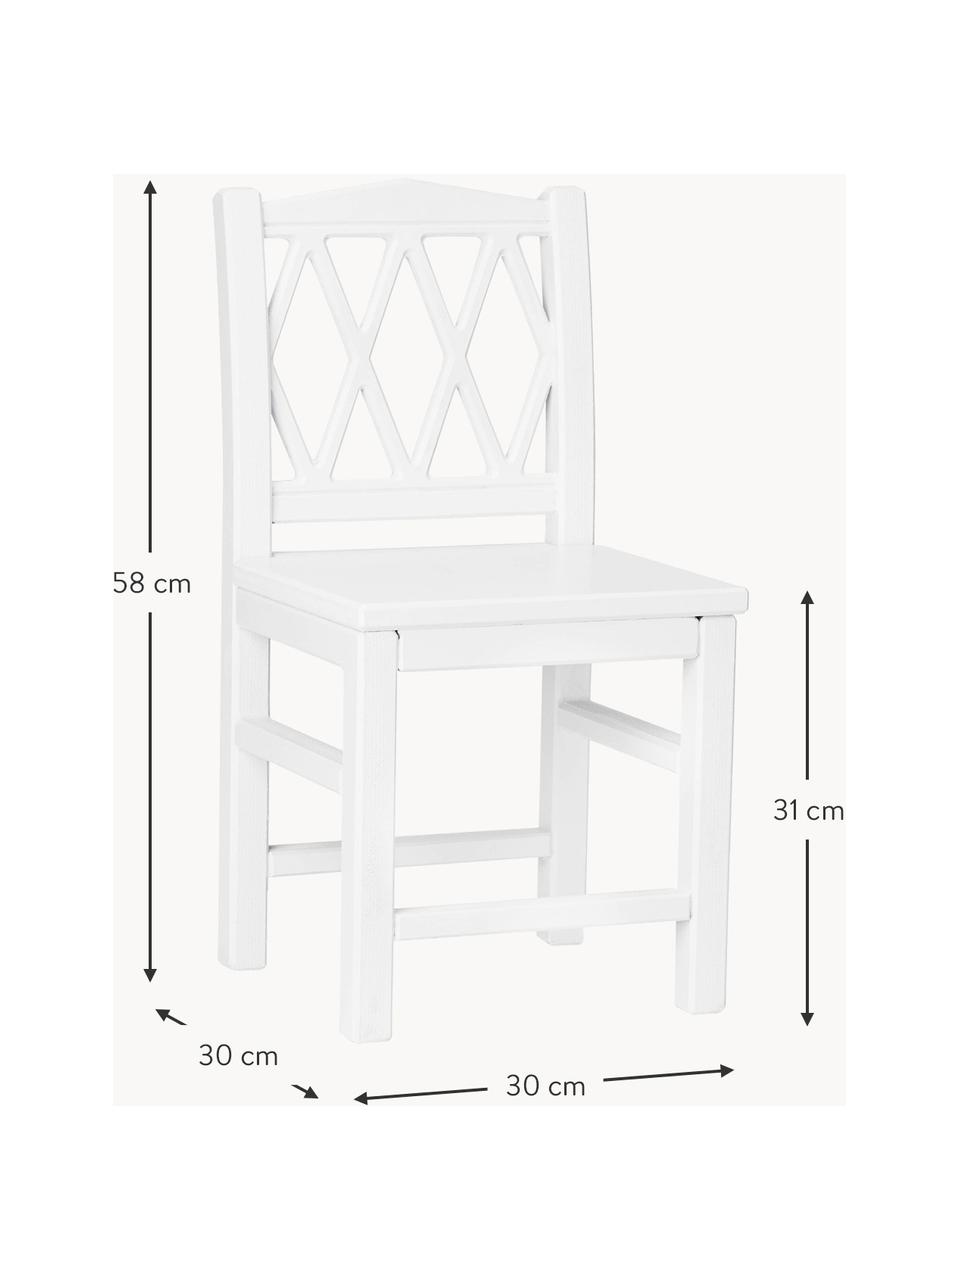 Dřevěná dětská židle Harlequin, Březové dřevo, dřevovláknitá deska se střední hustotou (MDF), natřená barvou bez VOC, Březové dřevo, bíle lakované, Š 30 cm, V 58 cm